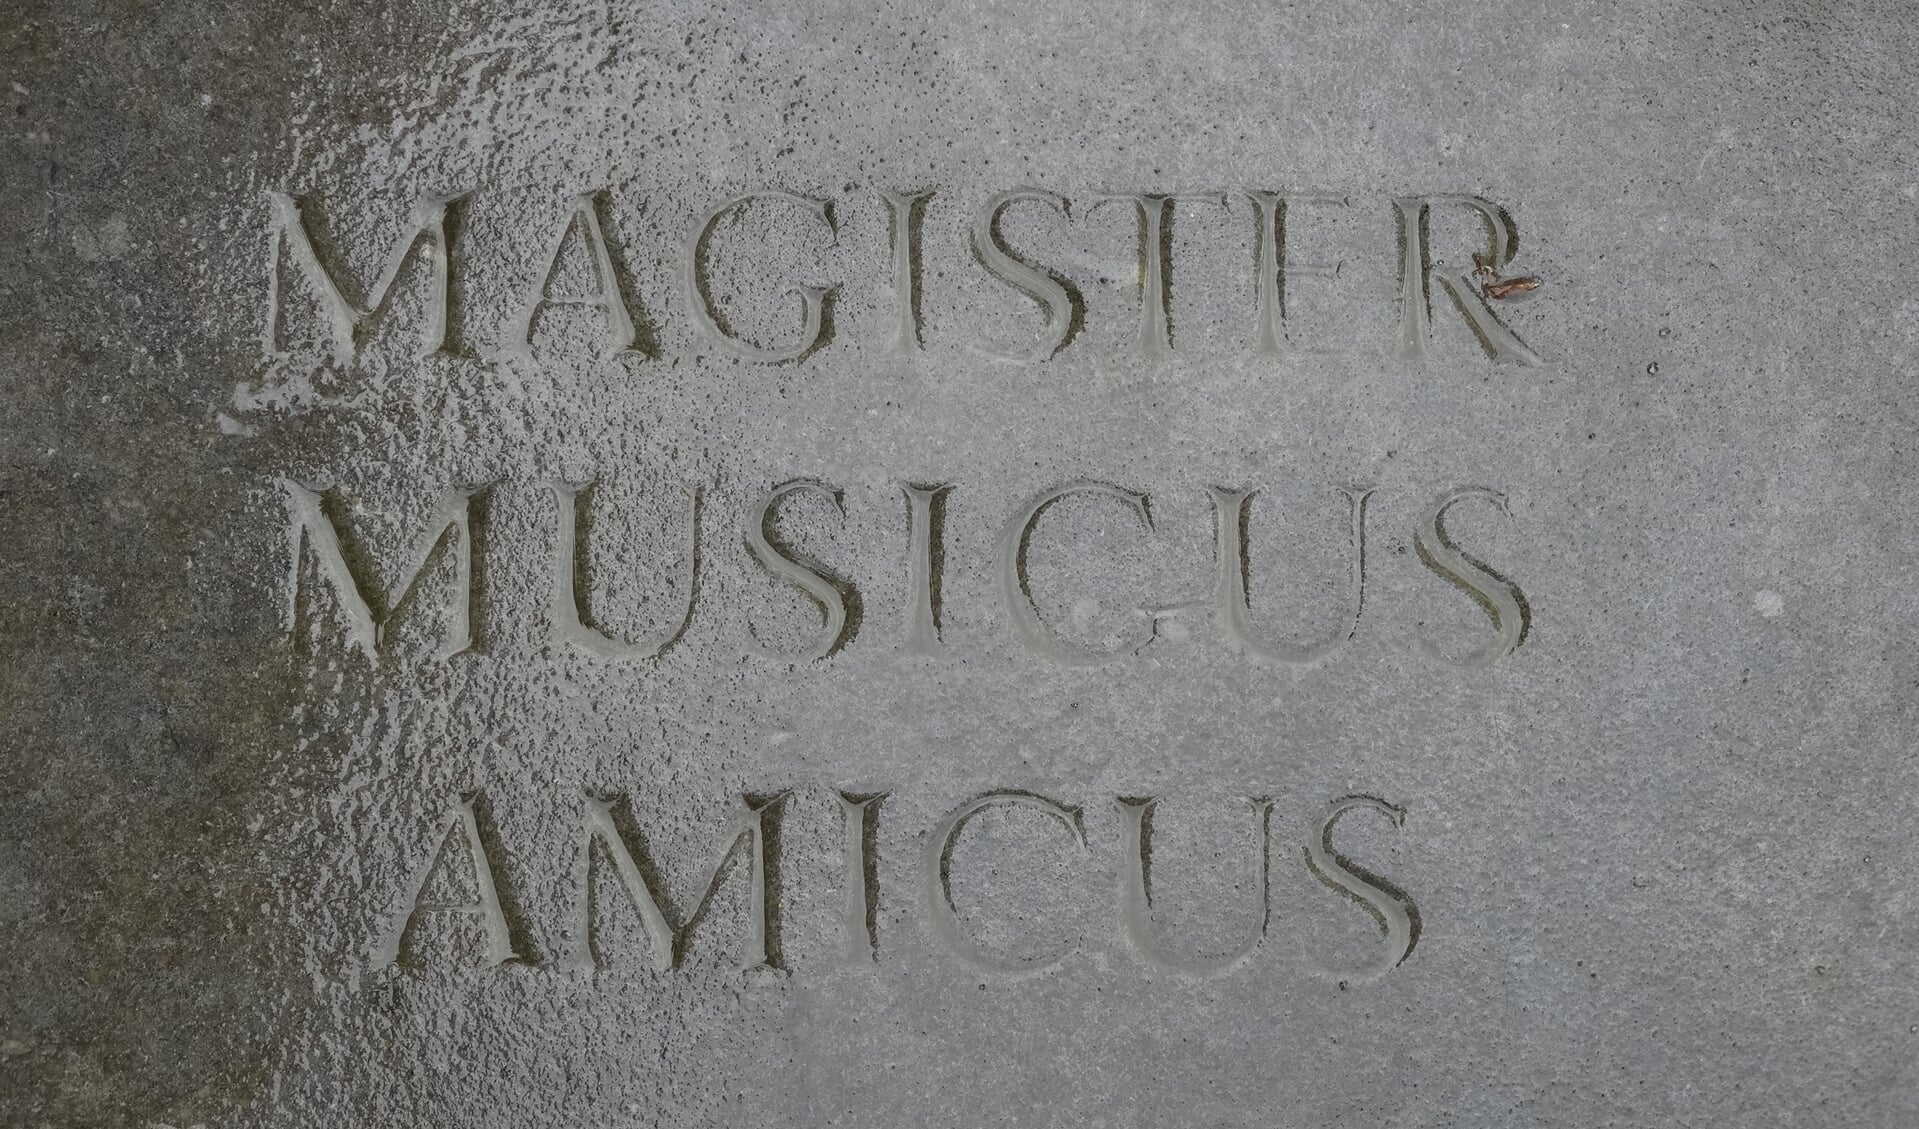 Op zijn graf staat: William Hilsley 1911 tot 2003 Magister Musicus Amicus